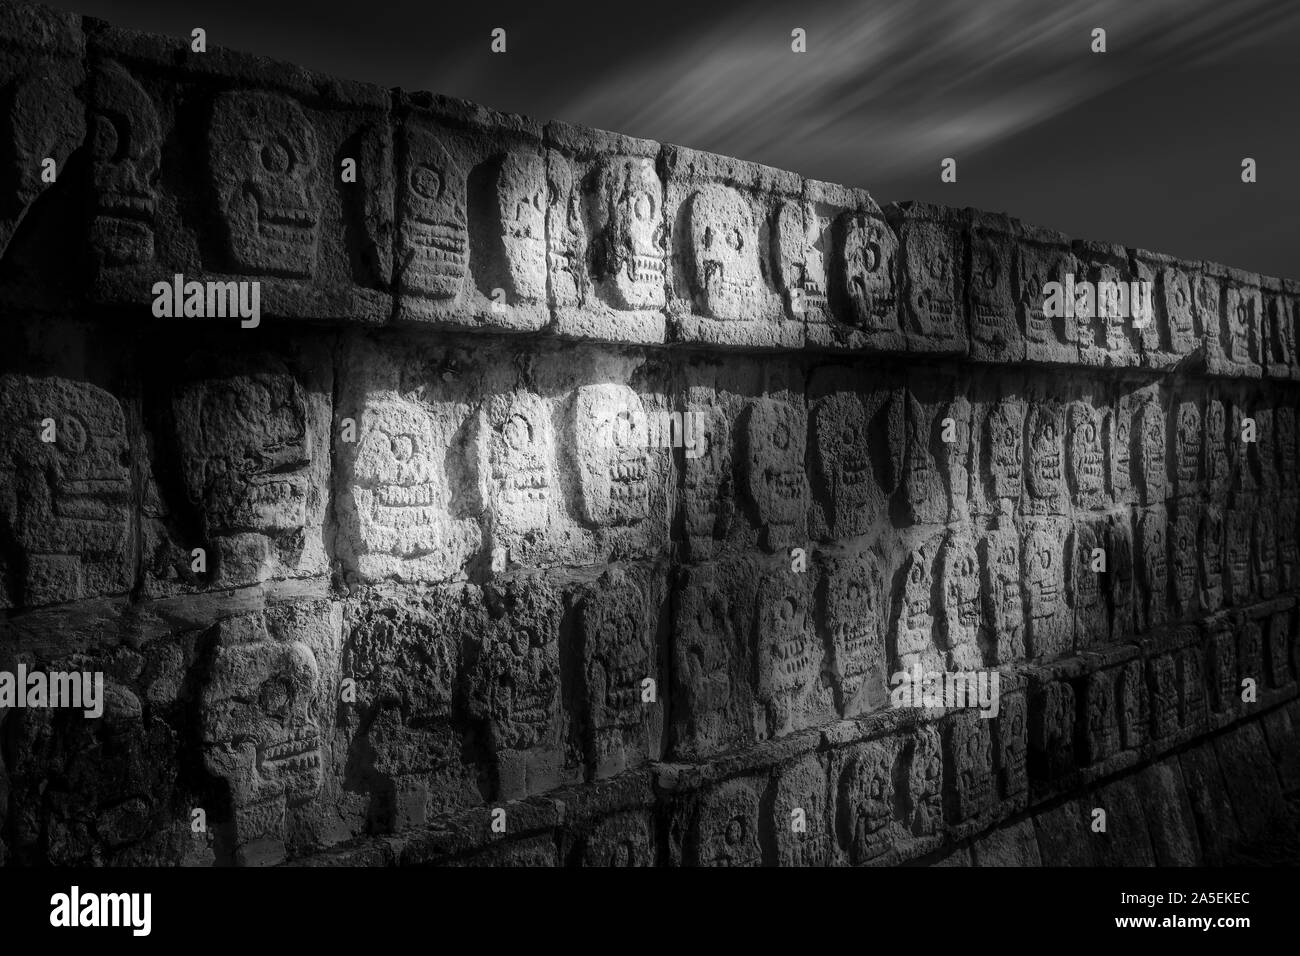 The tzompantli, or wall of skulls, at Chichen-Itza, Yucatan, Mexico. Stock Photo